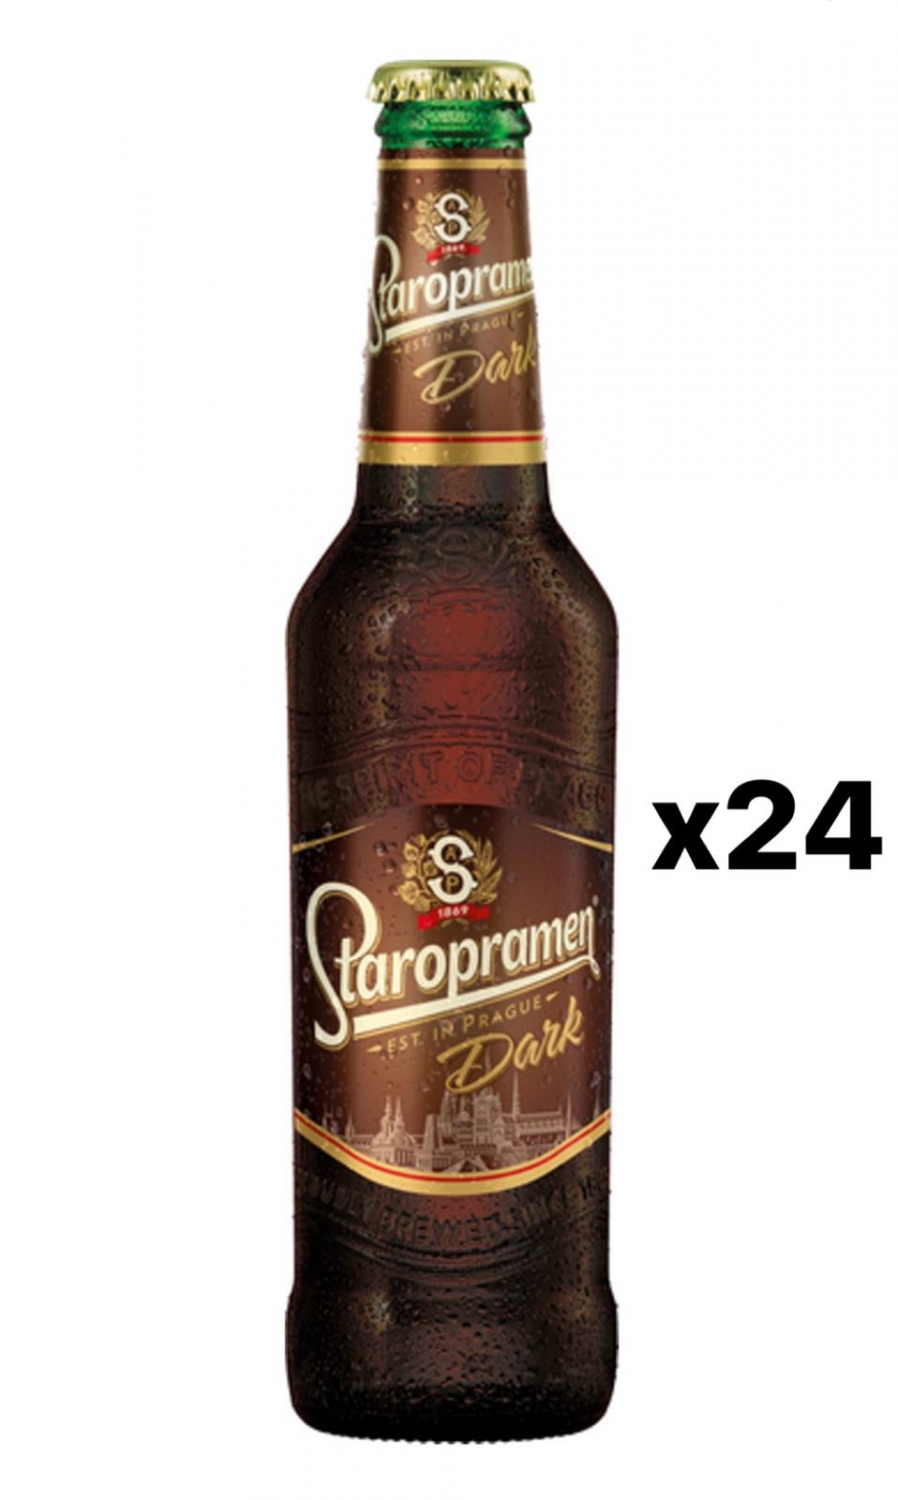 Staropramen Dark 4,4% 24x33cl bottle